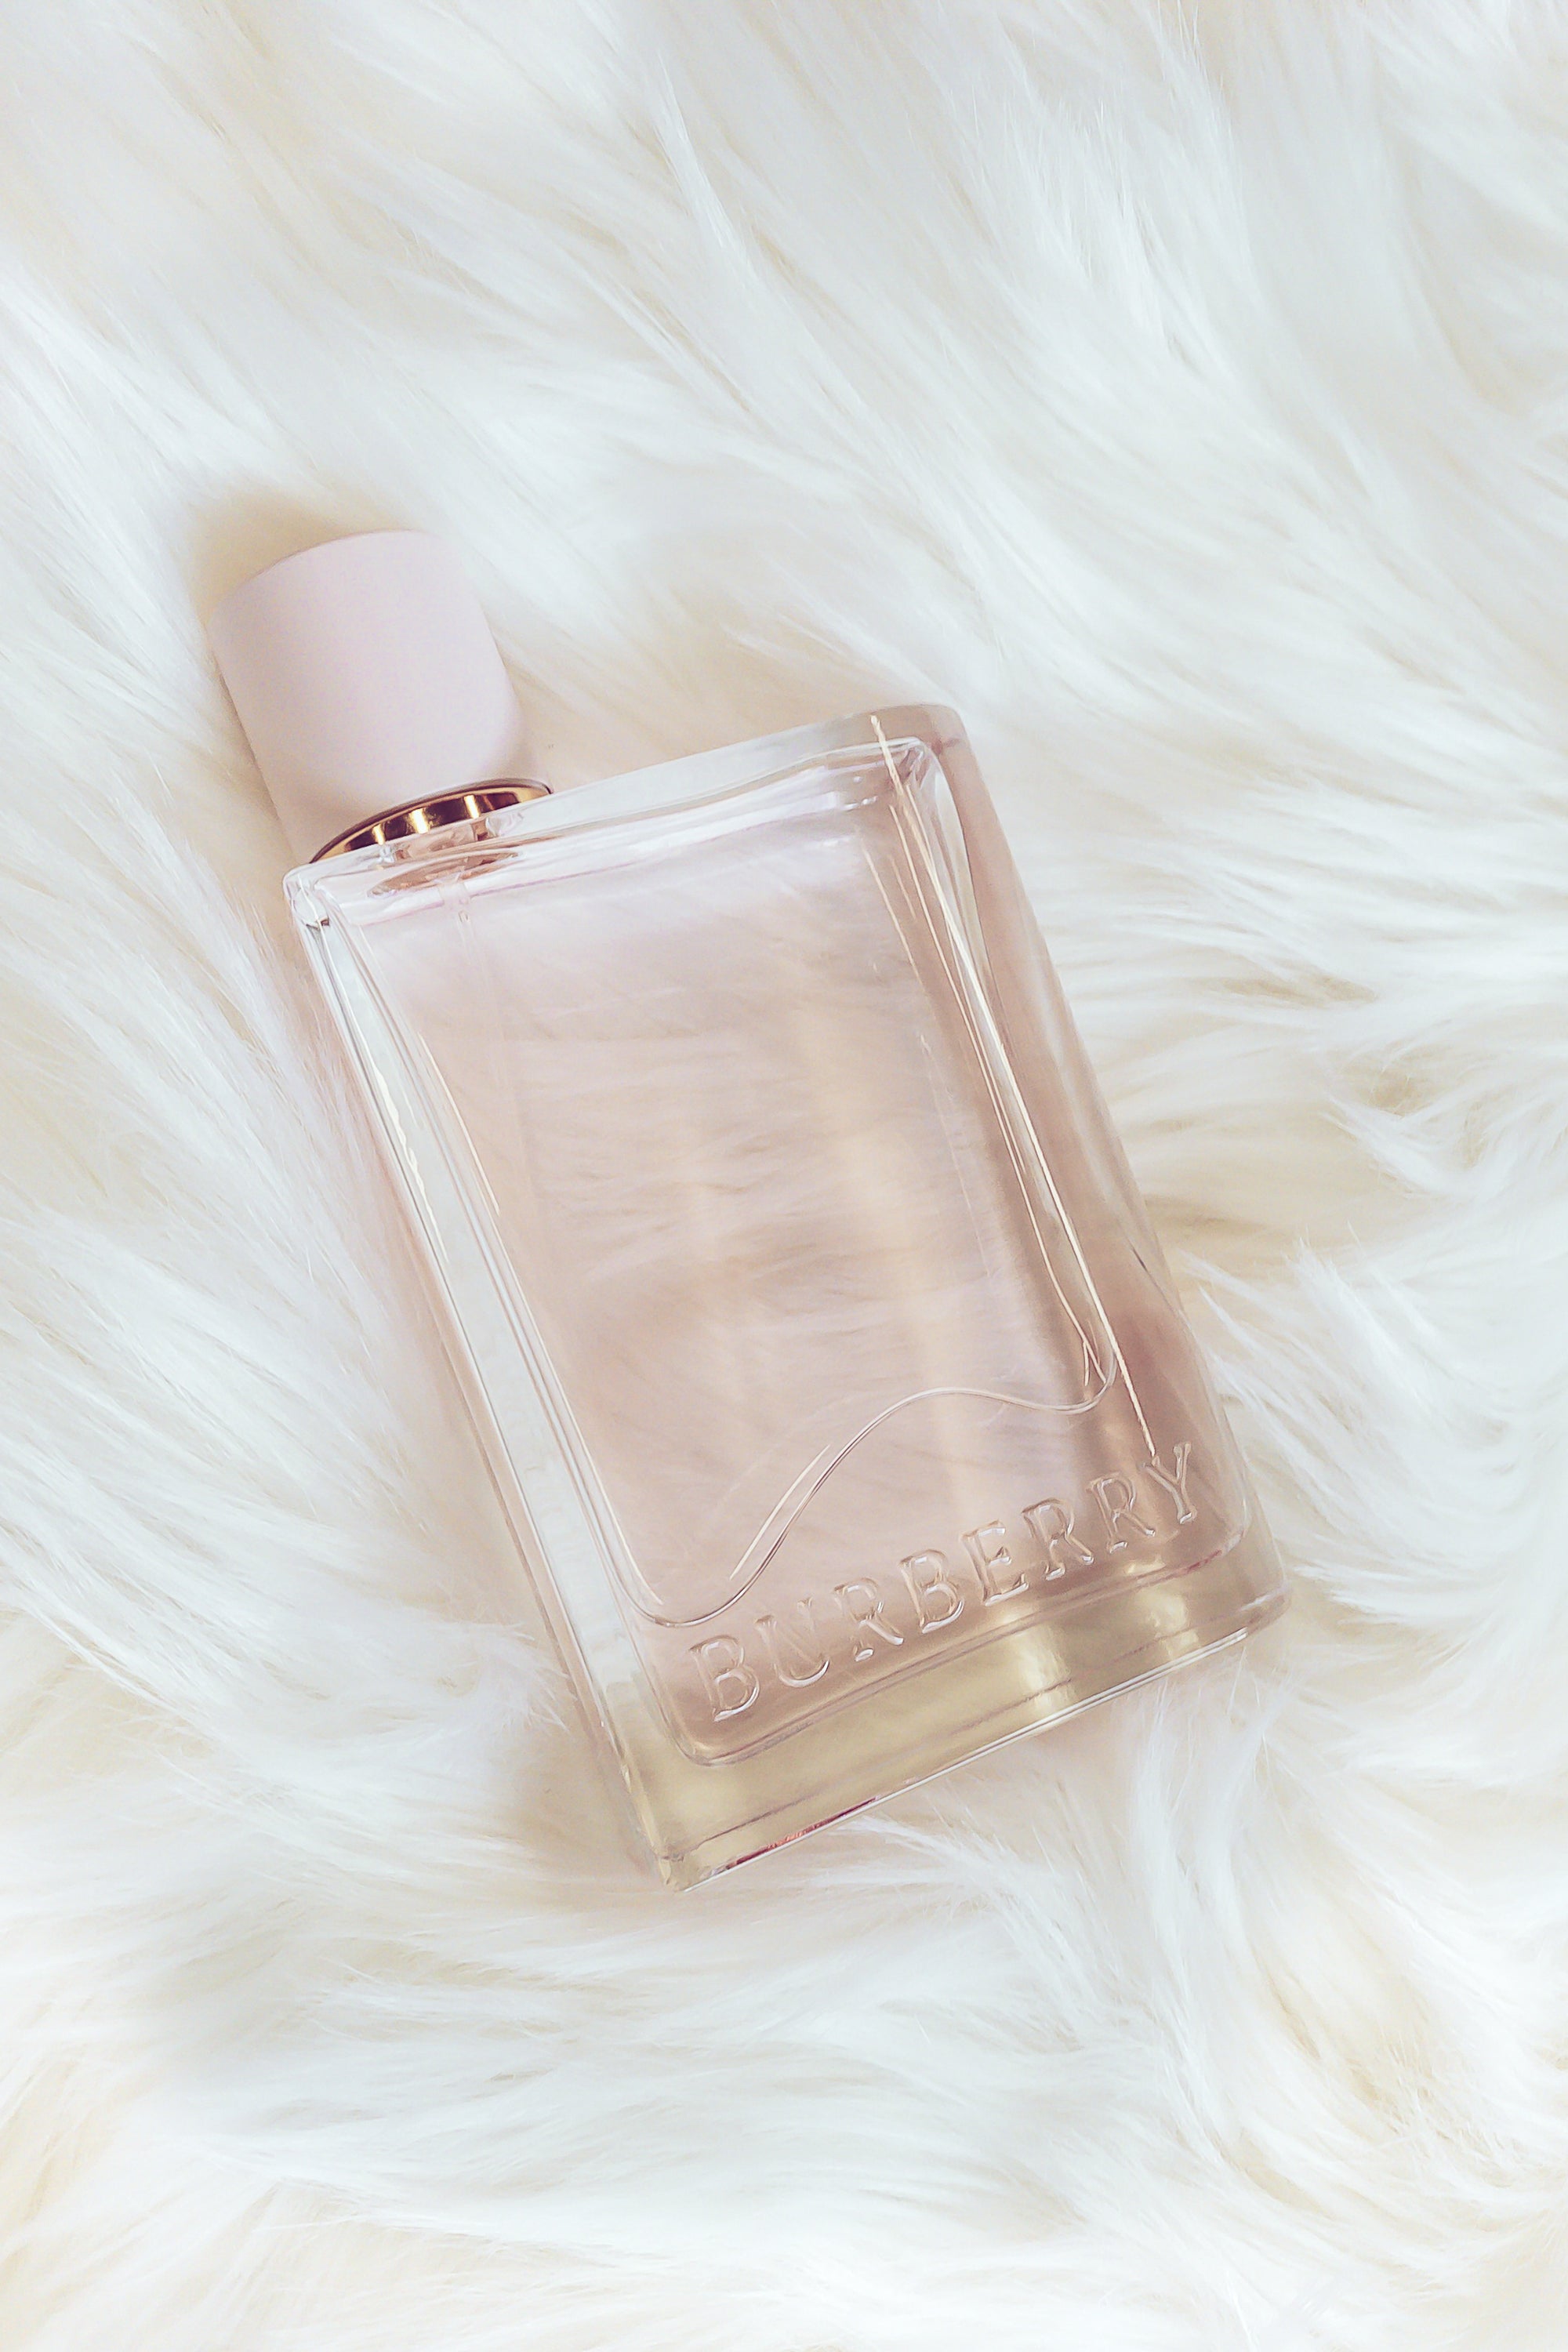 Burberry | Her Eau de Parfum